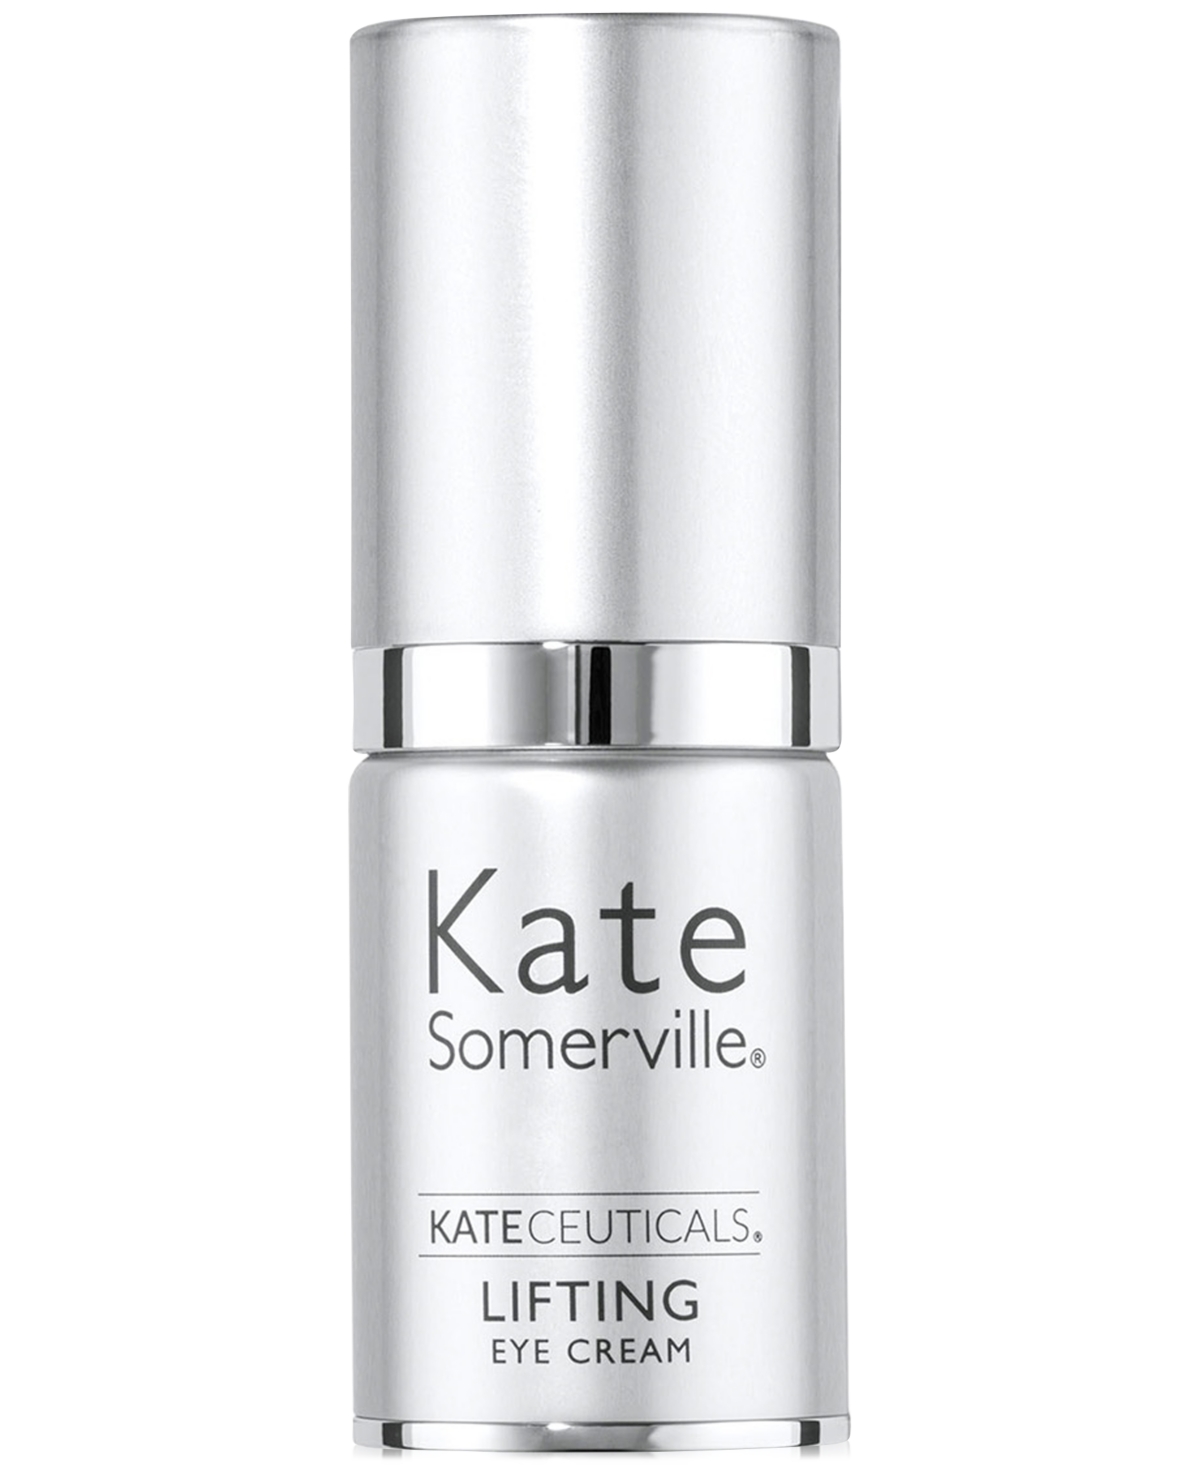 KateCeuticals Lifting Eye Cream, 0.5 oz.